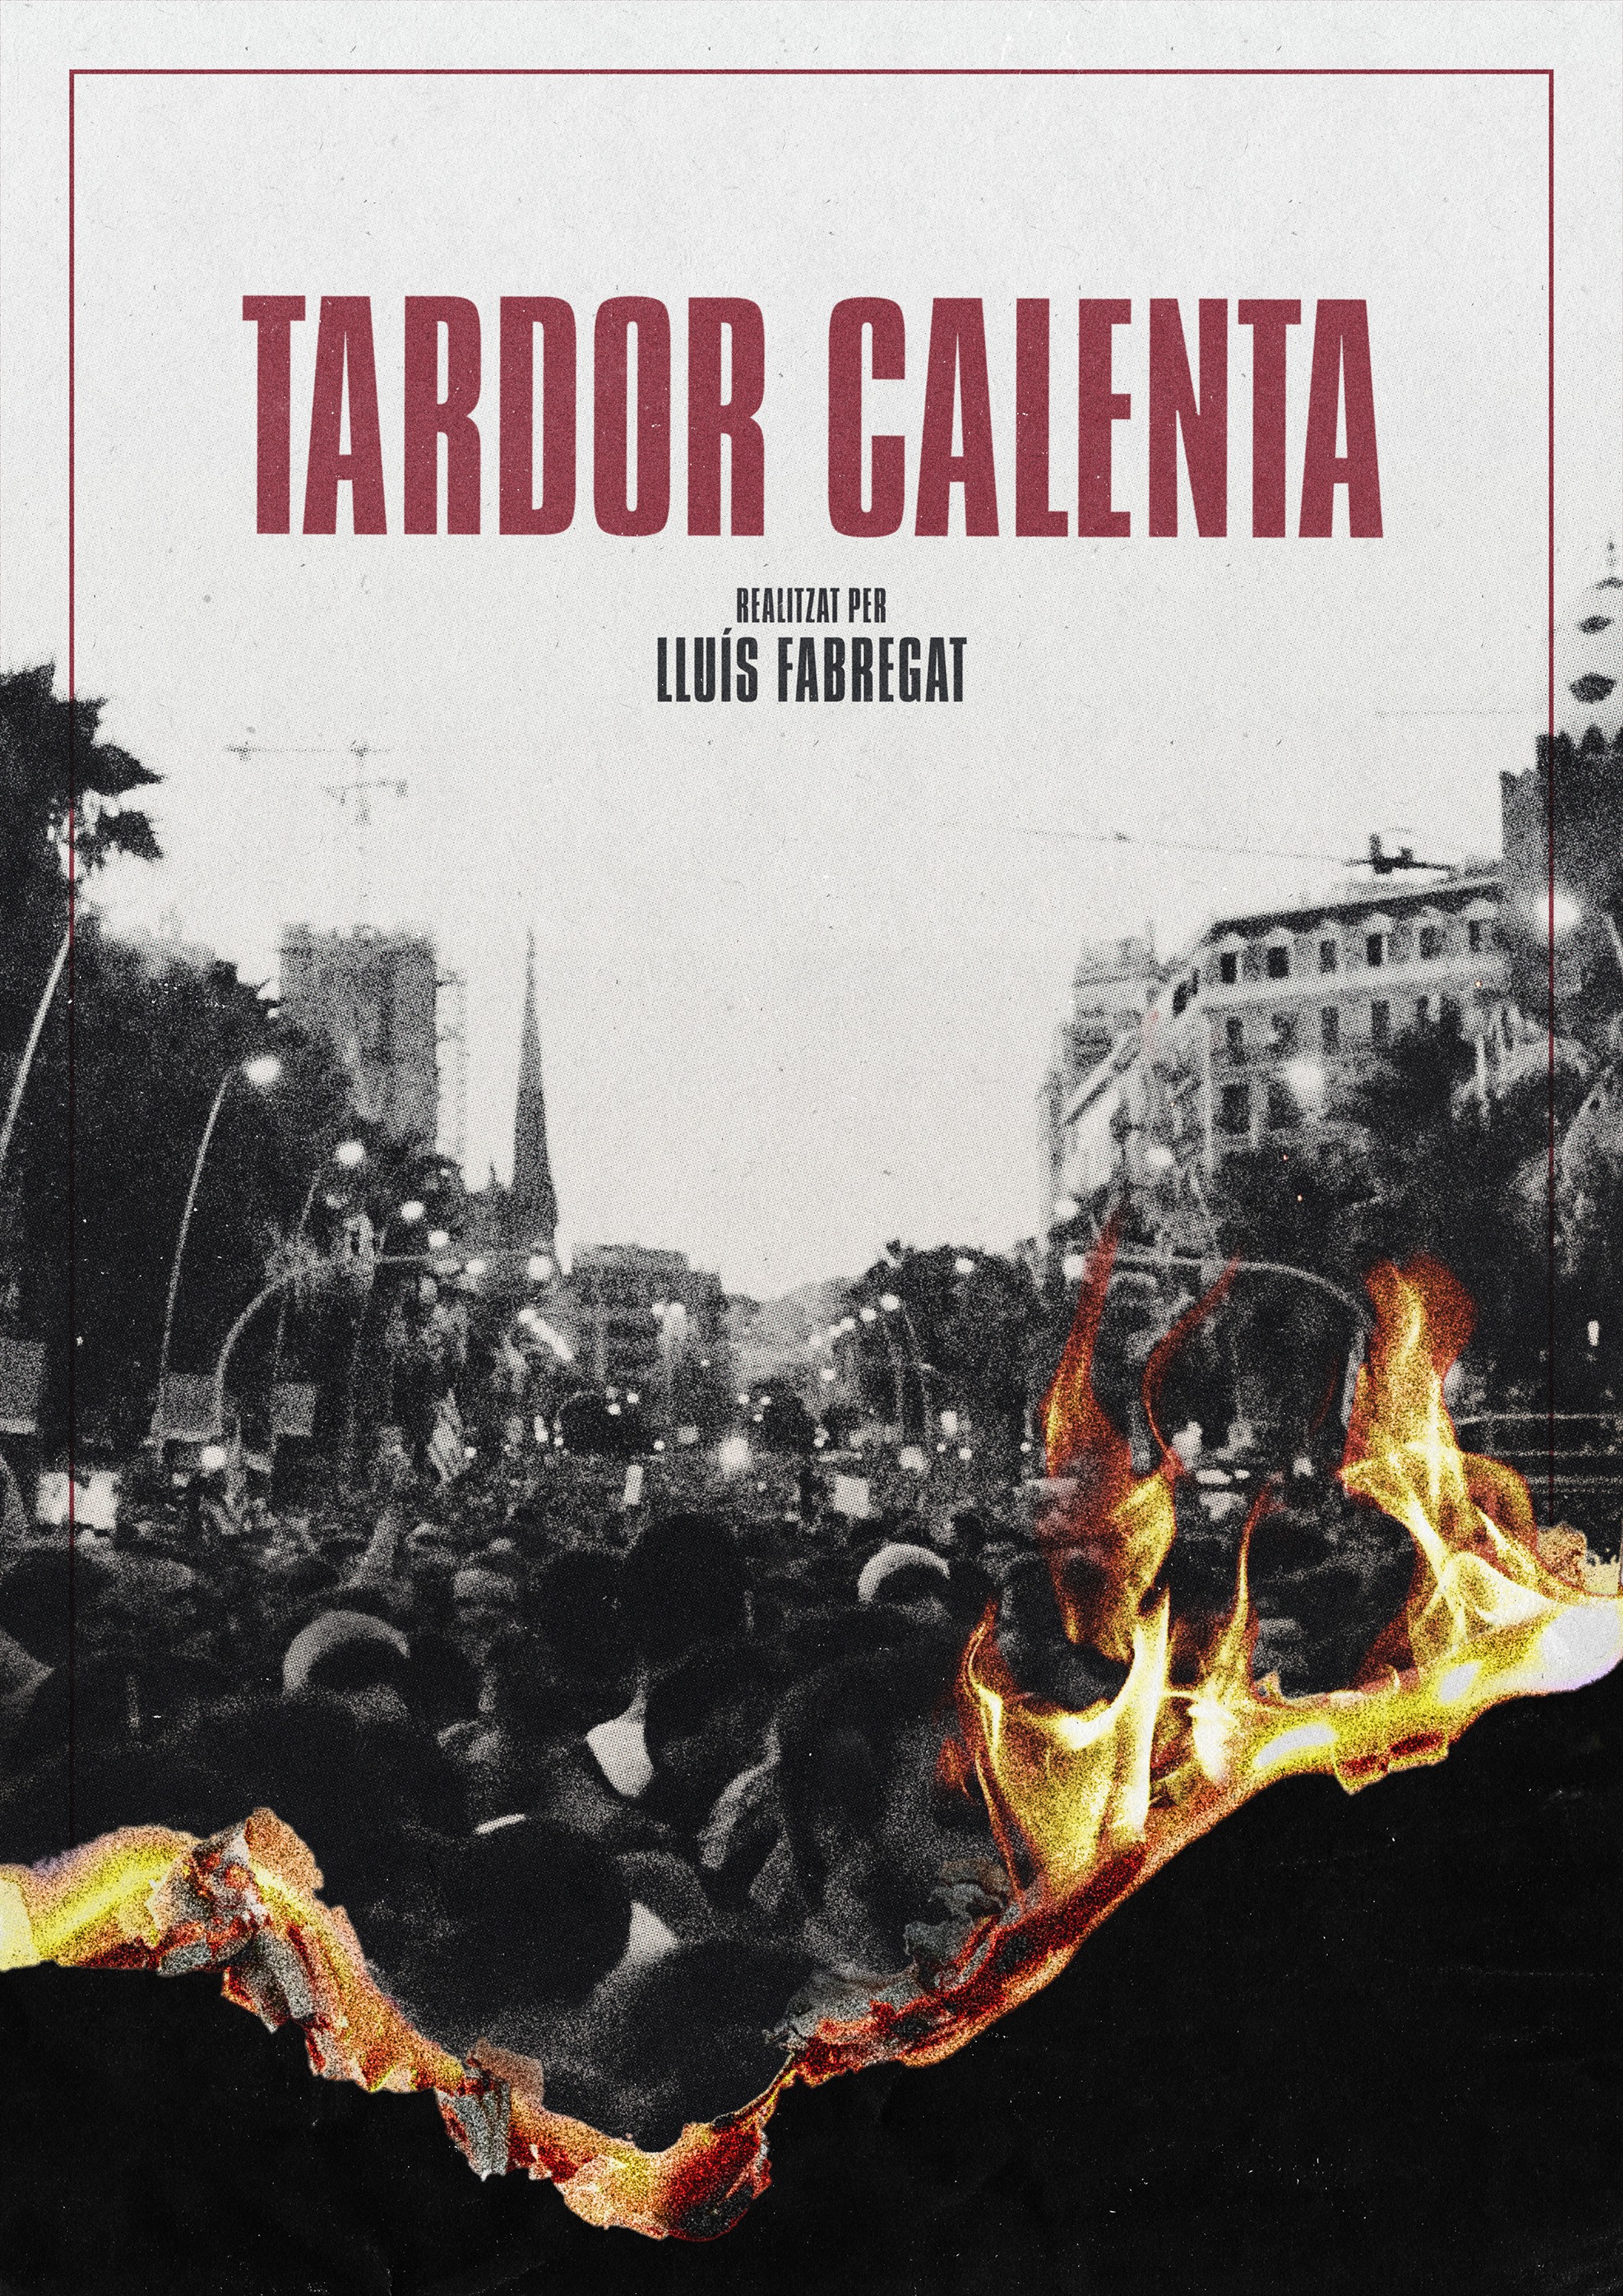 Mega Sized Movie Poster Image for Tardor Calenta